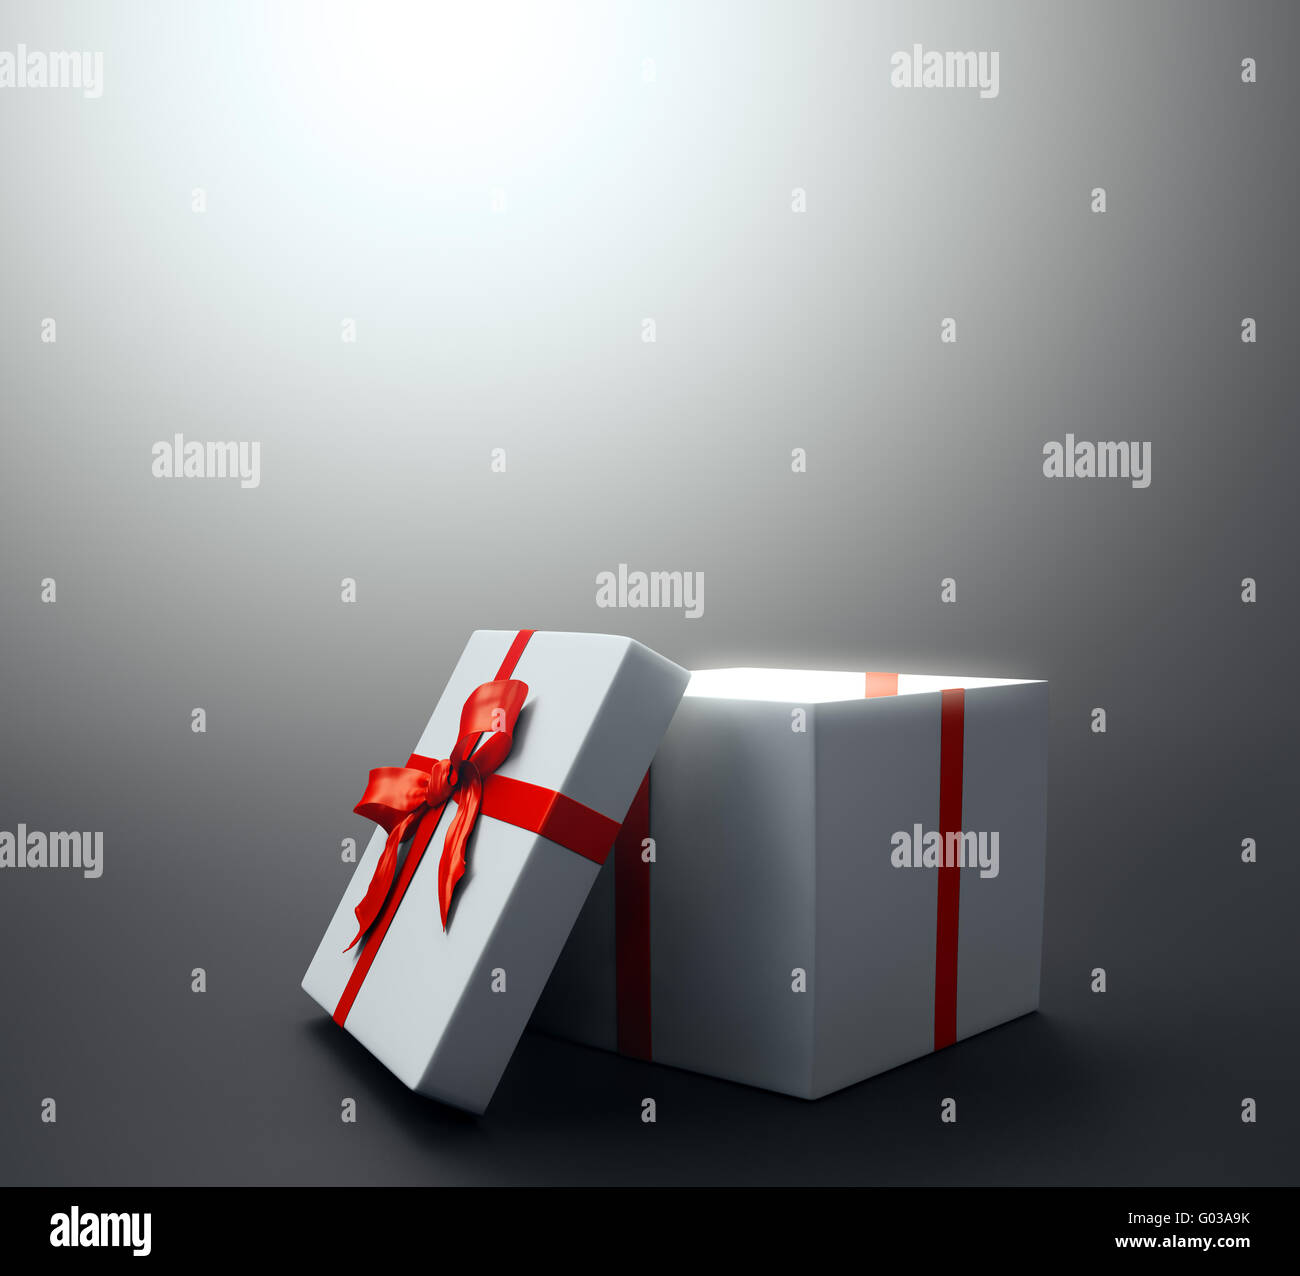 Weiße Geschenk mit einem roten Band - Weihnachts-Feier-Bild Stockfoto